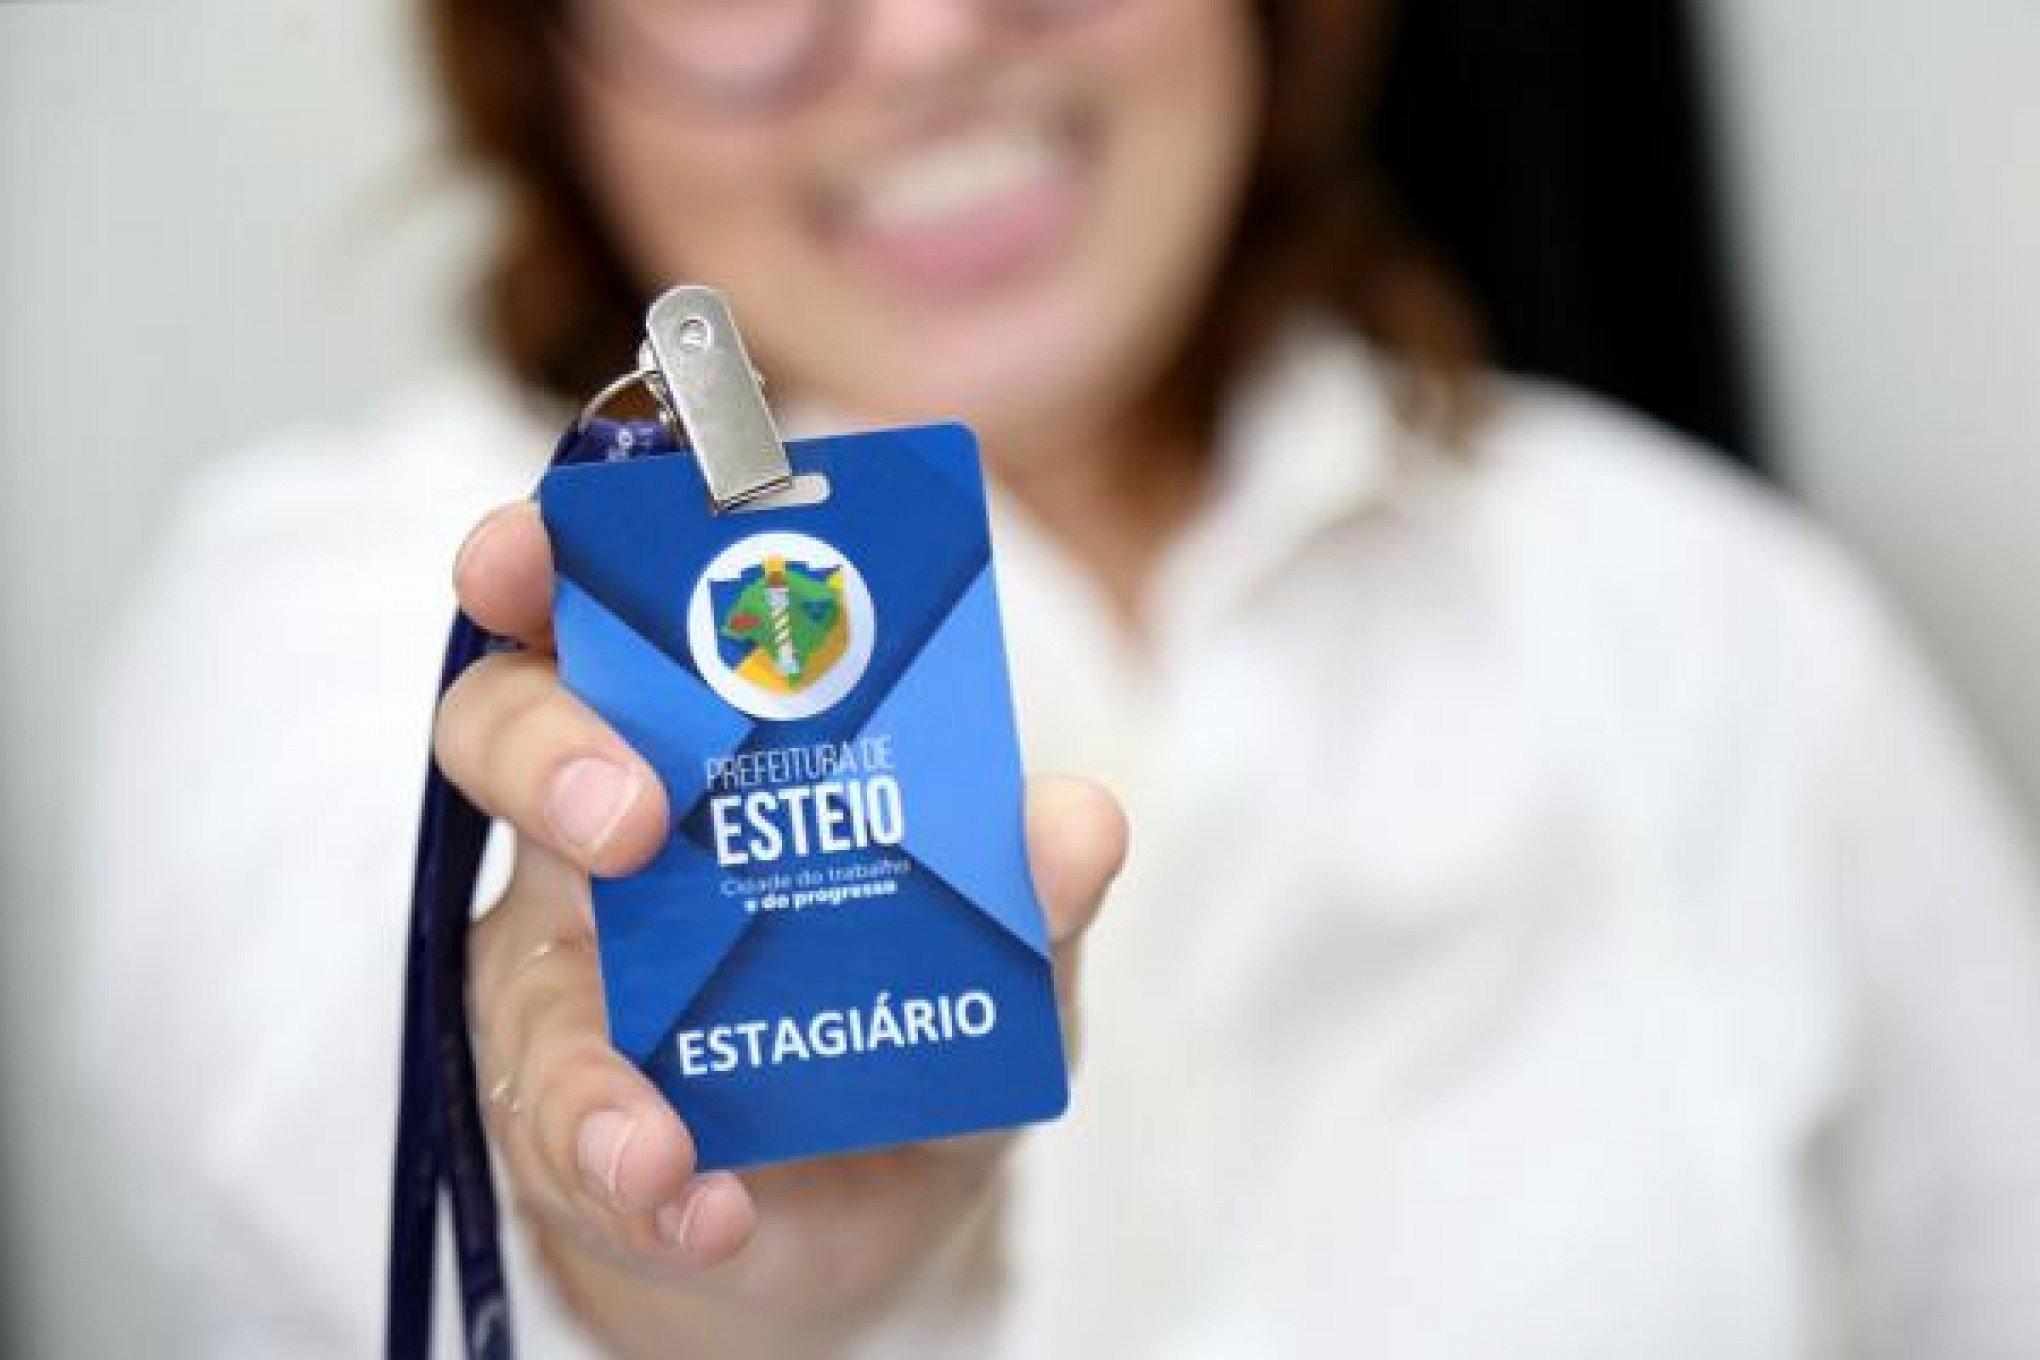 Último dia para se inscrever na seleção de estagiários da prefeitura de Esteio